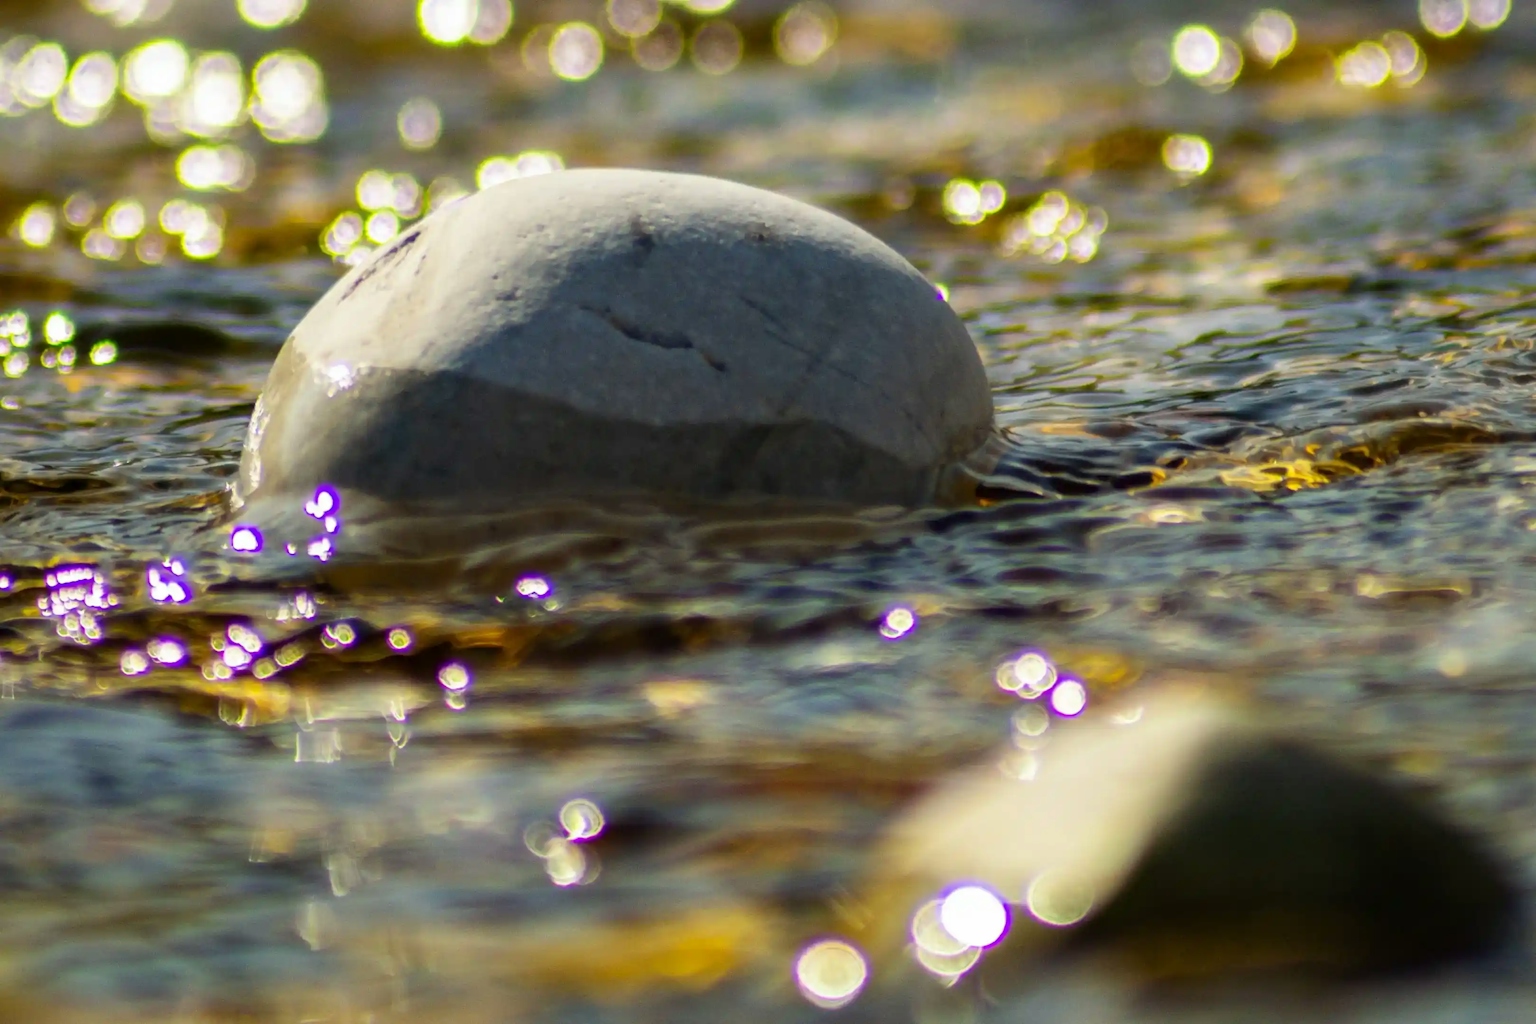 Roccia bianca parzialmente sommersa in fiume luccicante d'oro e violetto